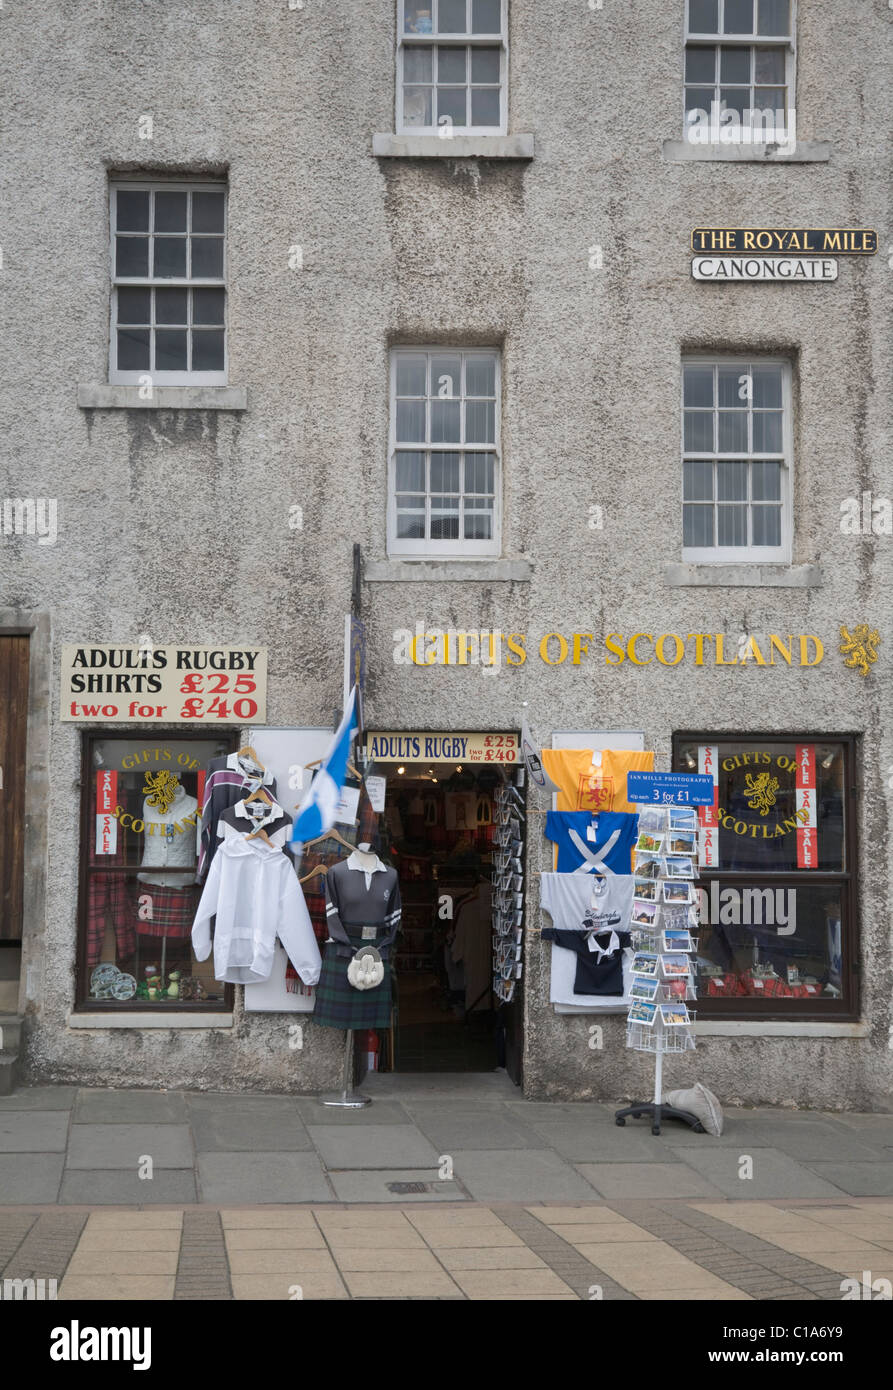 Geschenk-Shop mit schottische Souvenirs in Edinburgh, Schottland  Stockfotografie - Alamy